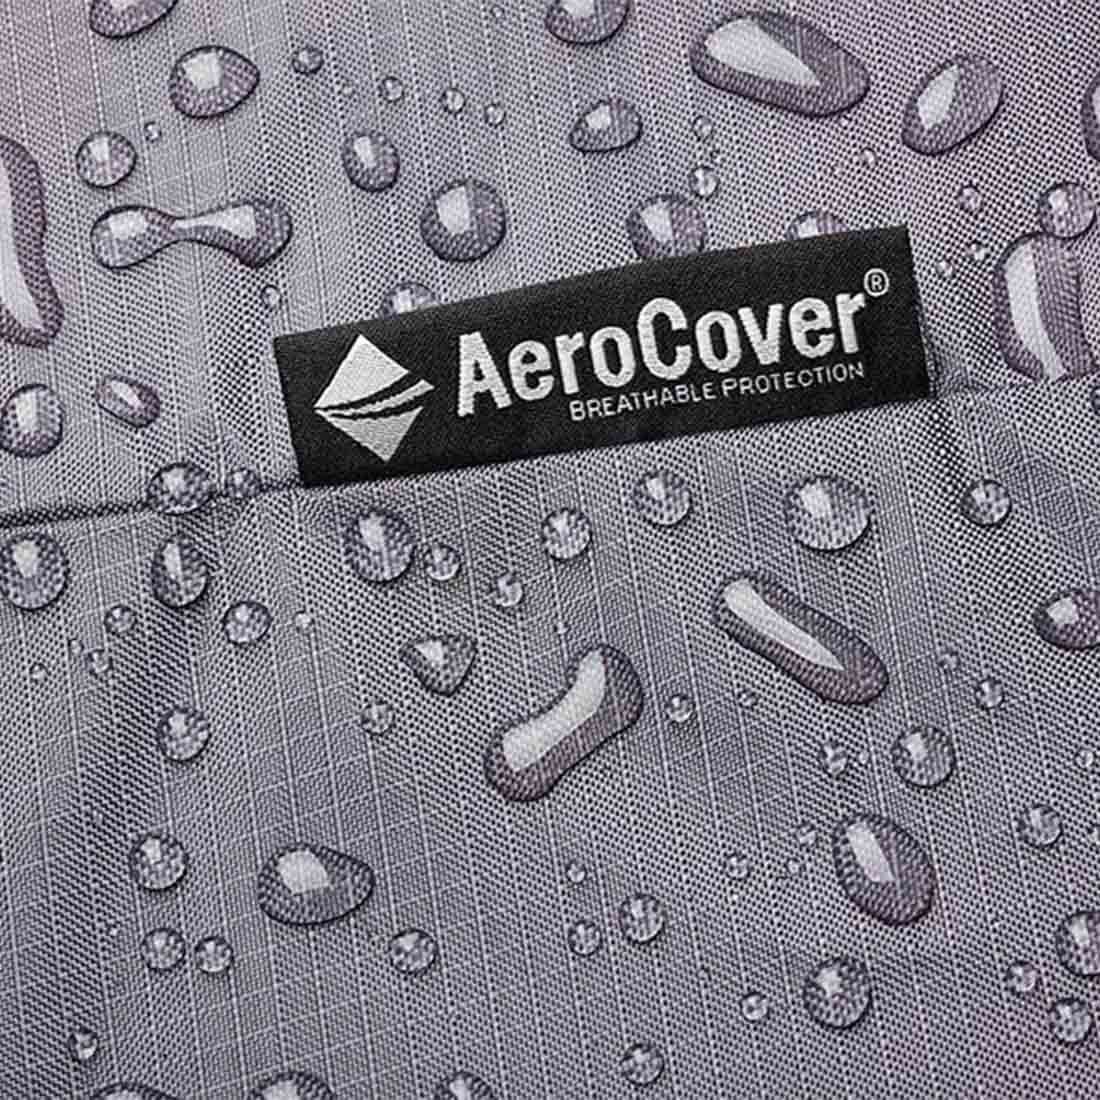 AeroCover Schutzhülle für Tisch 220x110x70cm Polyester